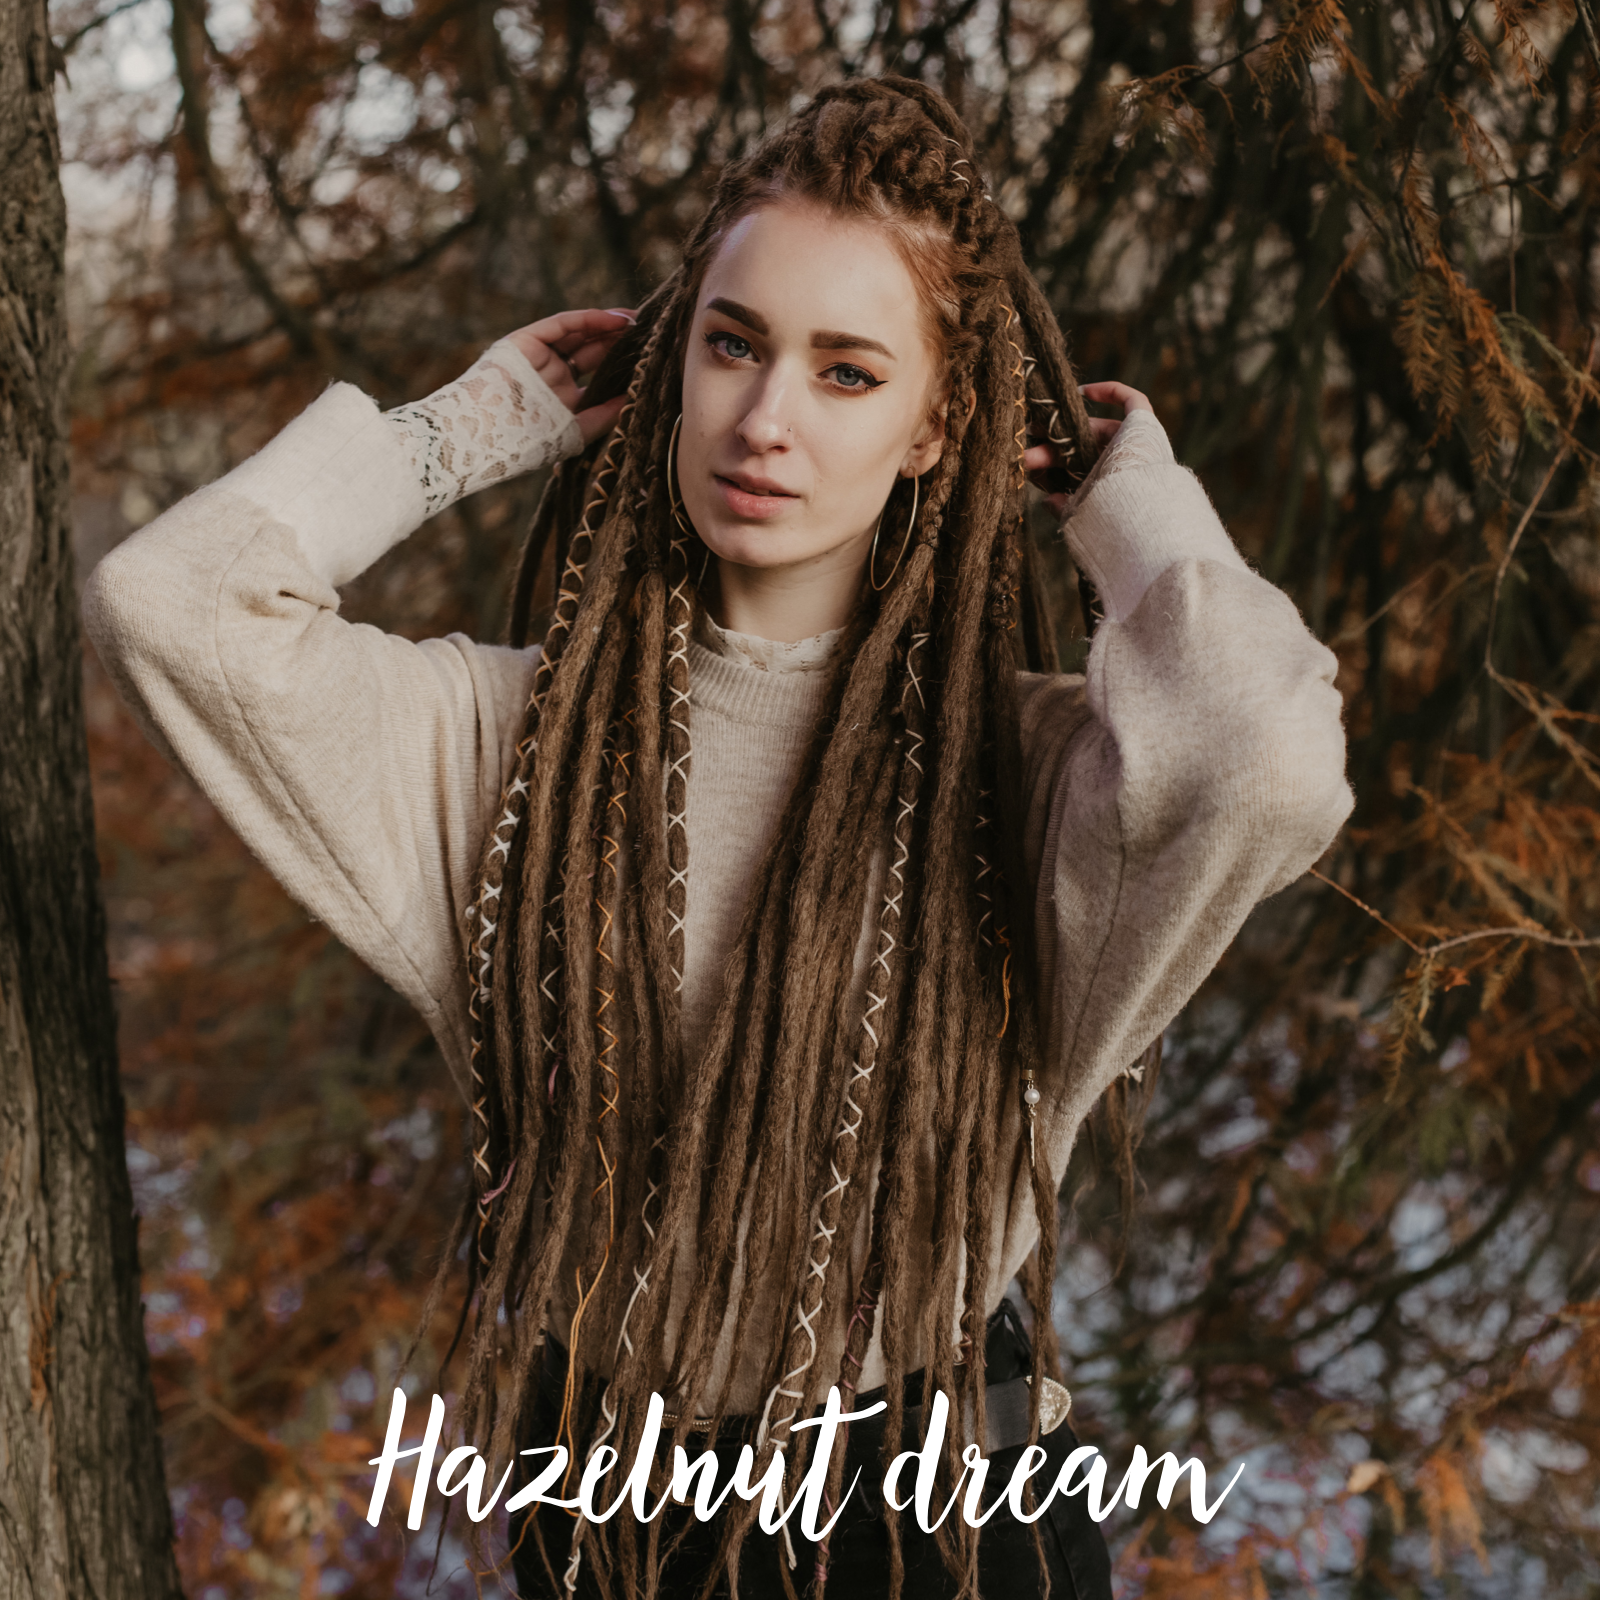 Emitsem wearing her set of Hazelnut dream Locks of Love, Shop the look, plain dreads, loose bundles